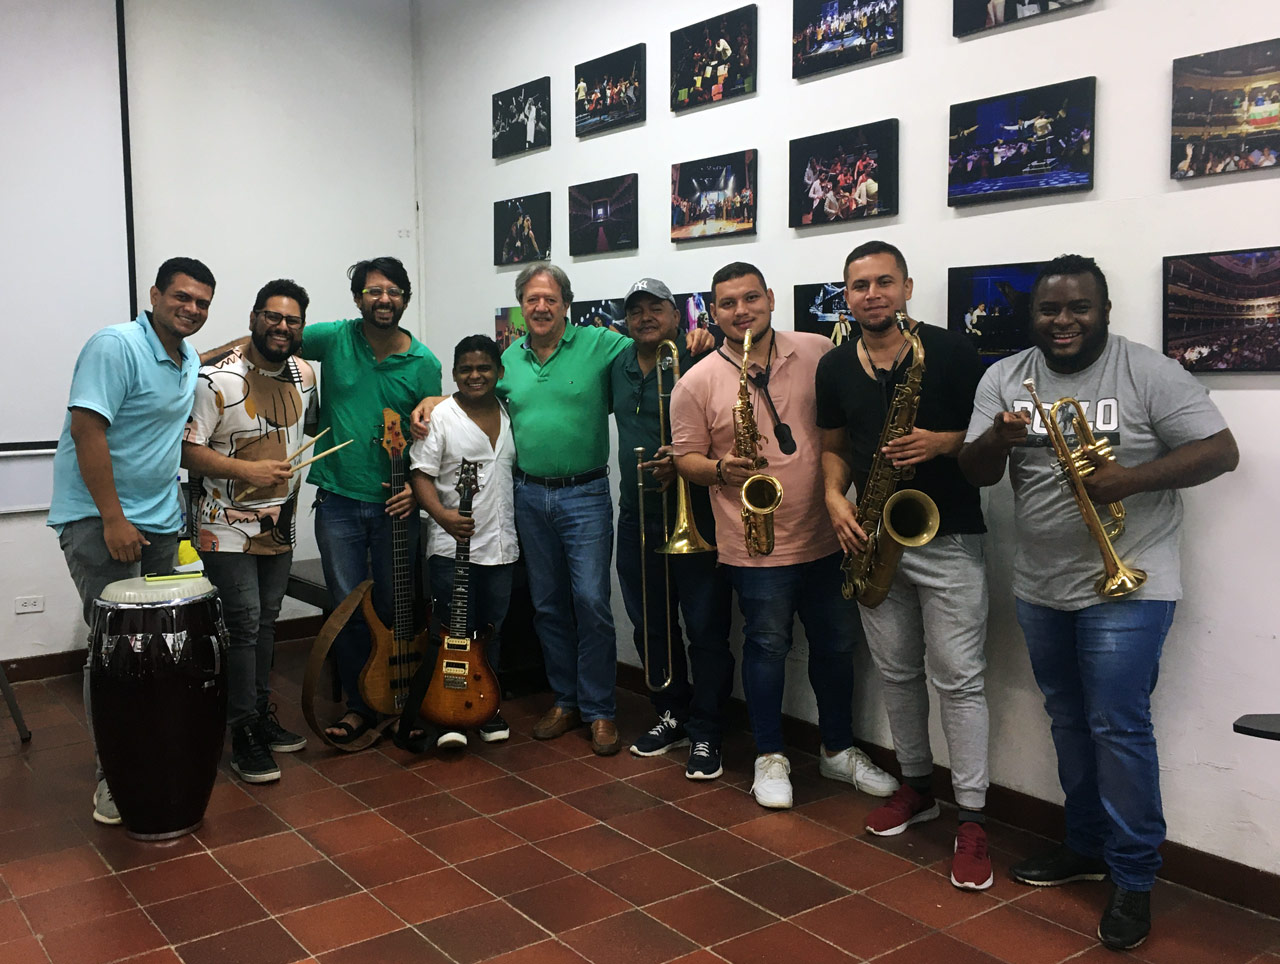  Universidad de los Andes con el Ensamble de Jazz Oscar Acevedo